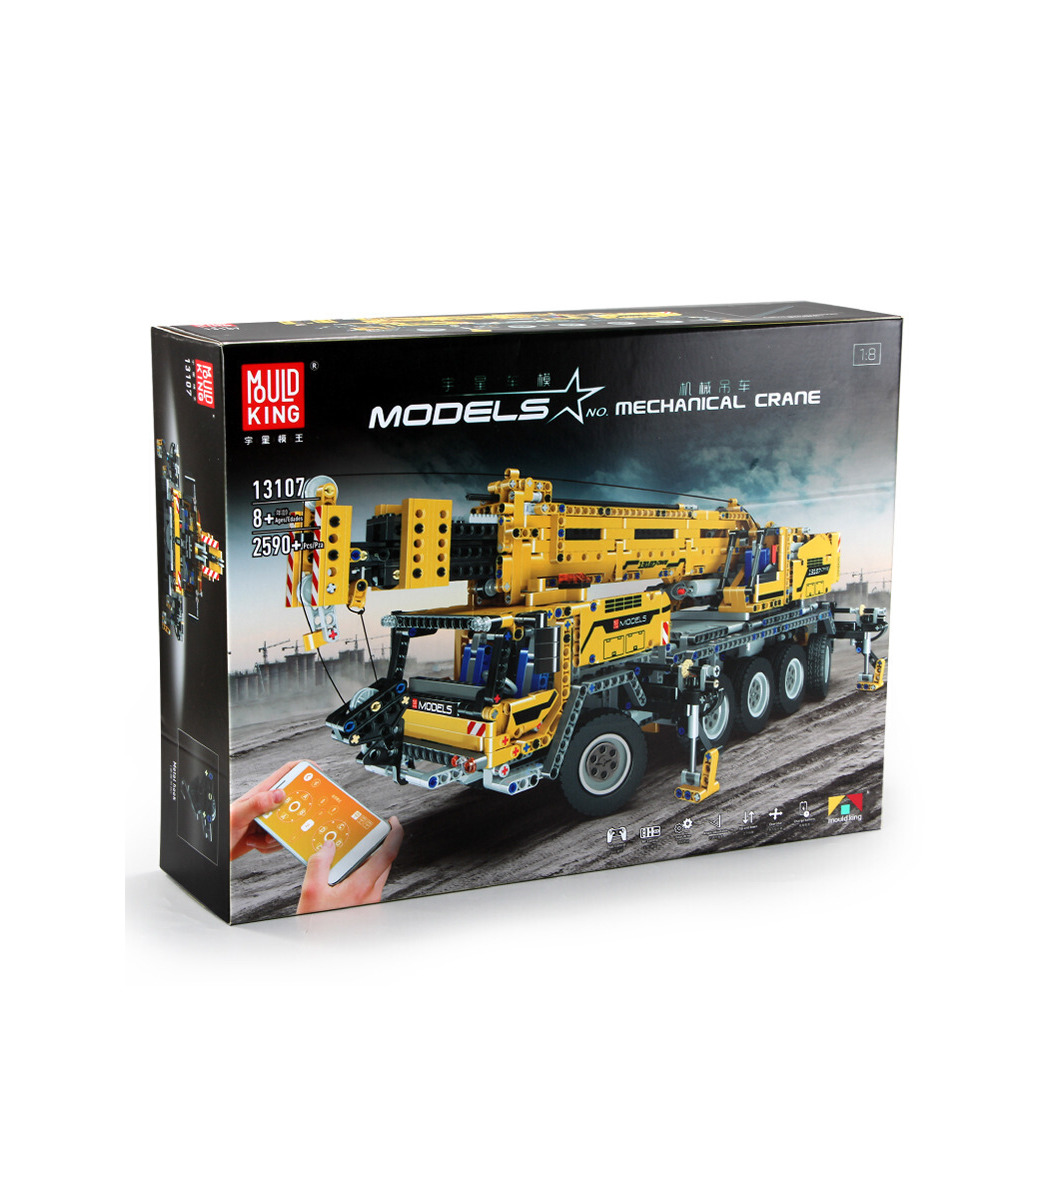 Mould King Mechanical Crane Modèle Nº 13107 échelle 1:8 2590 pièces à partir de 8 ans 